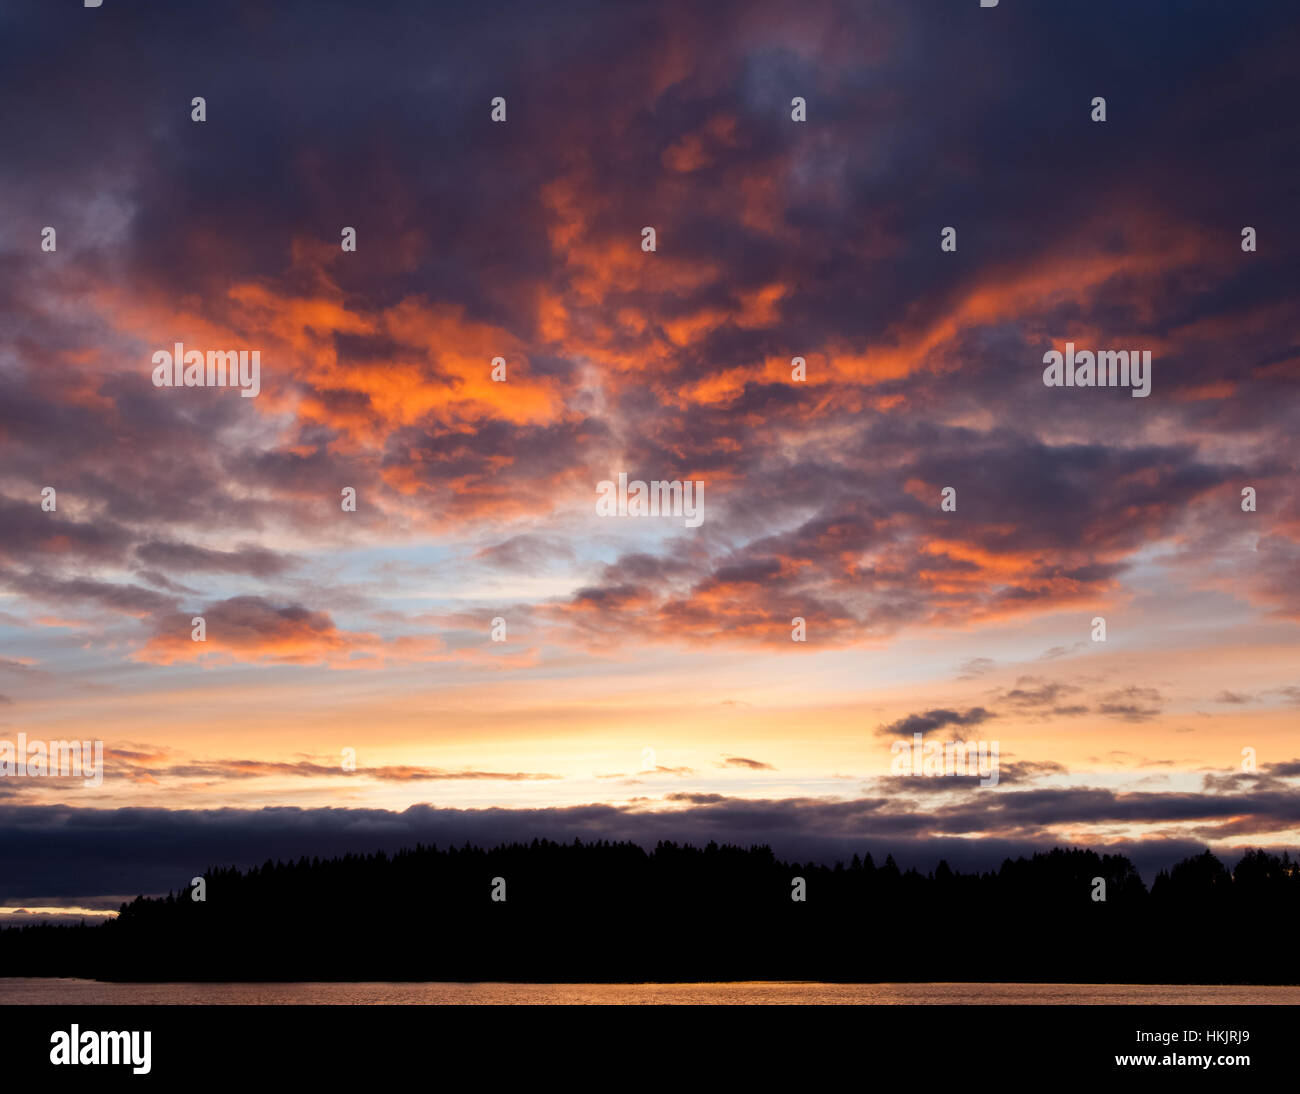 Vivid sunset sky landscape Stock Photo